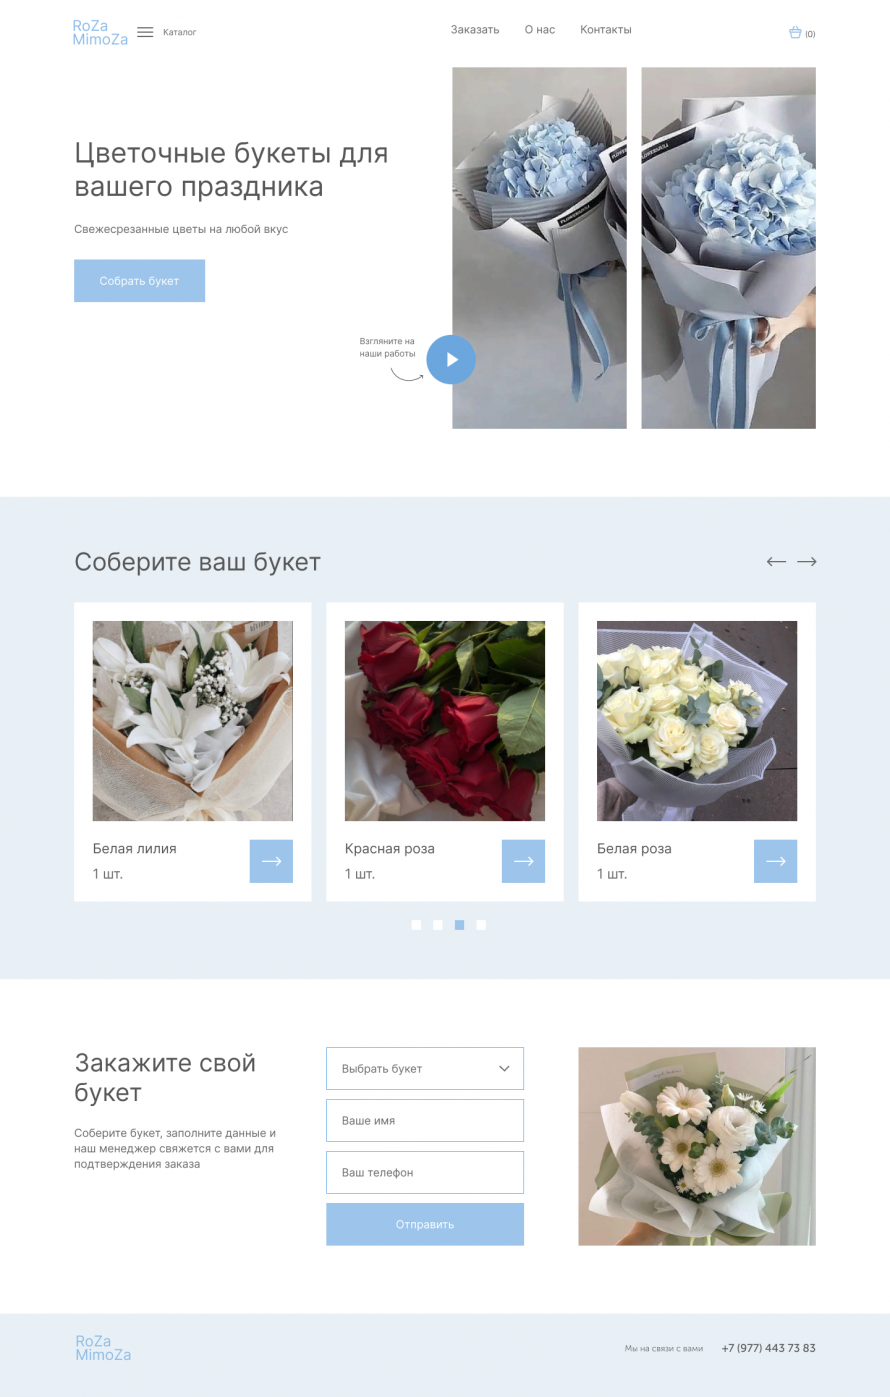 Website for a flower shop